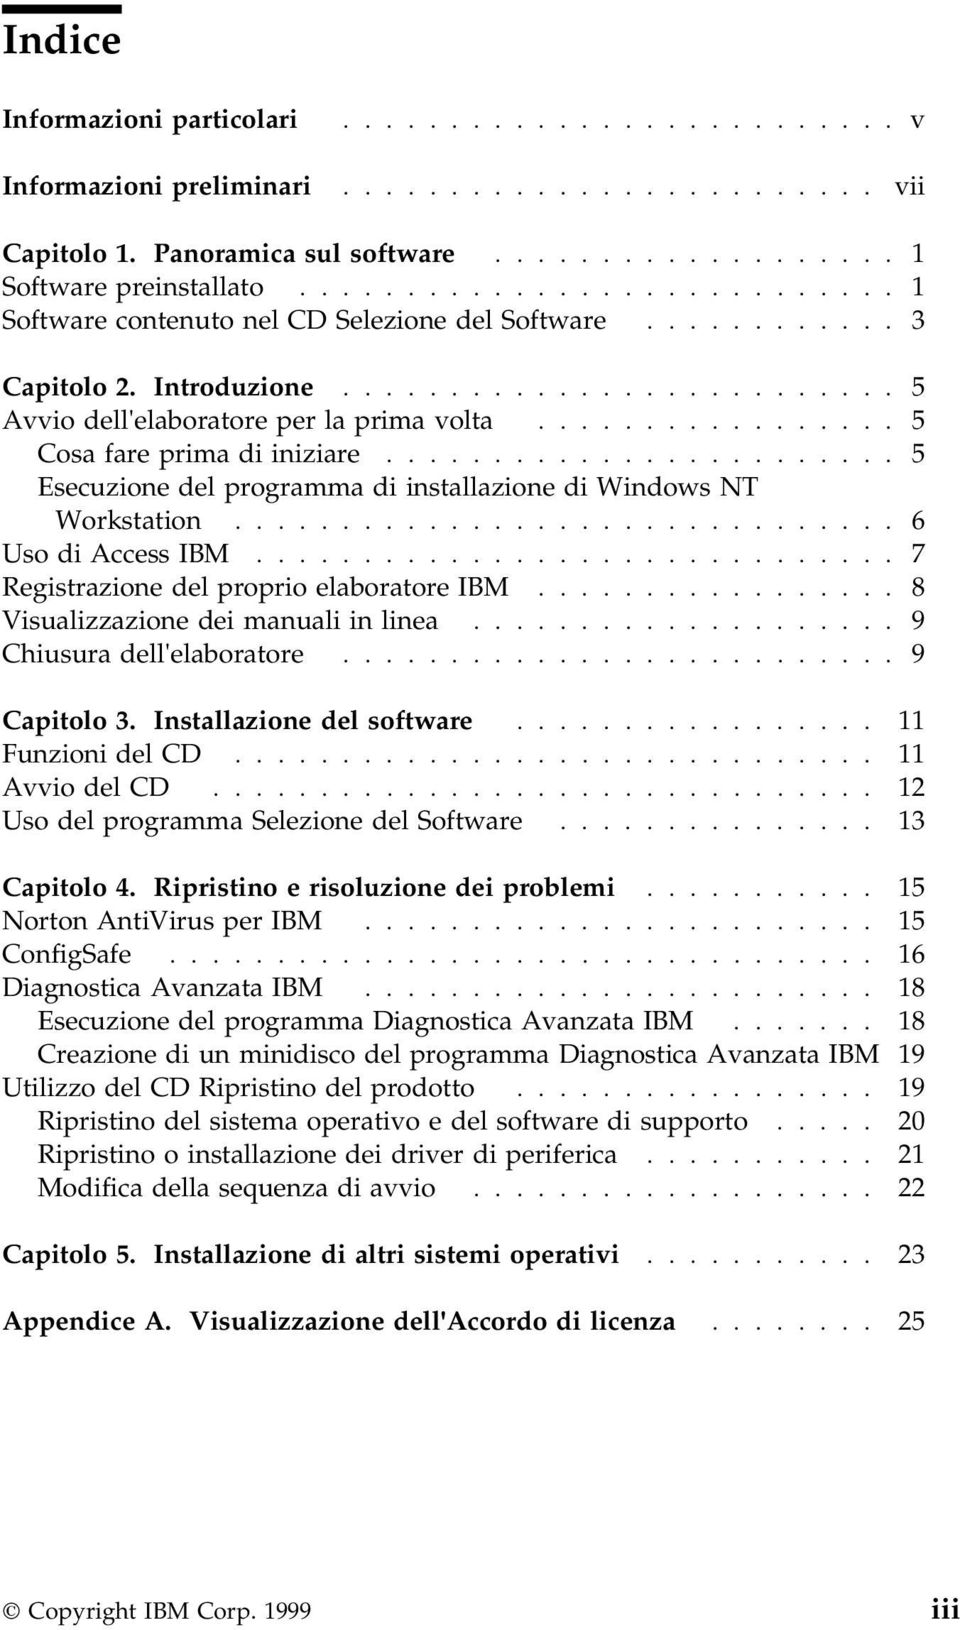 ................ 5 Cosa fare prima di iniziare........................ 5 Esecuzione del programma di installazione di Windows NT Workstation............................... 6 Uso di Access IBM.